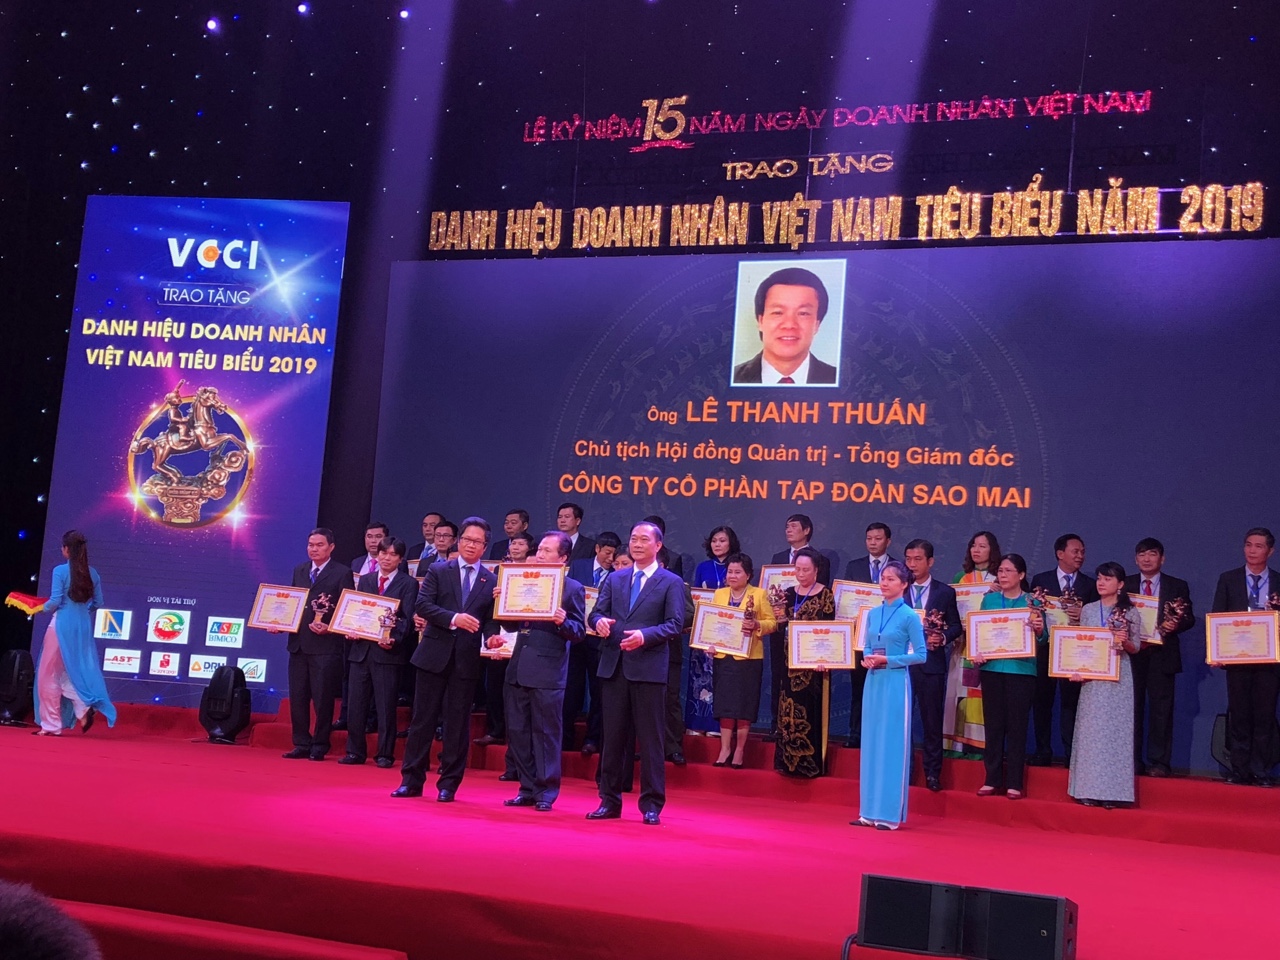 Tổng giám đốc Tập đoàn Sao Mai được vinh danh là “Doanh nhân Việt Nam tiêu biểu 2019